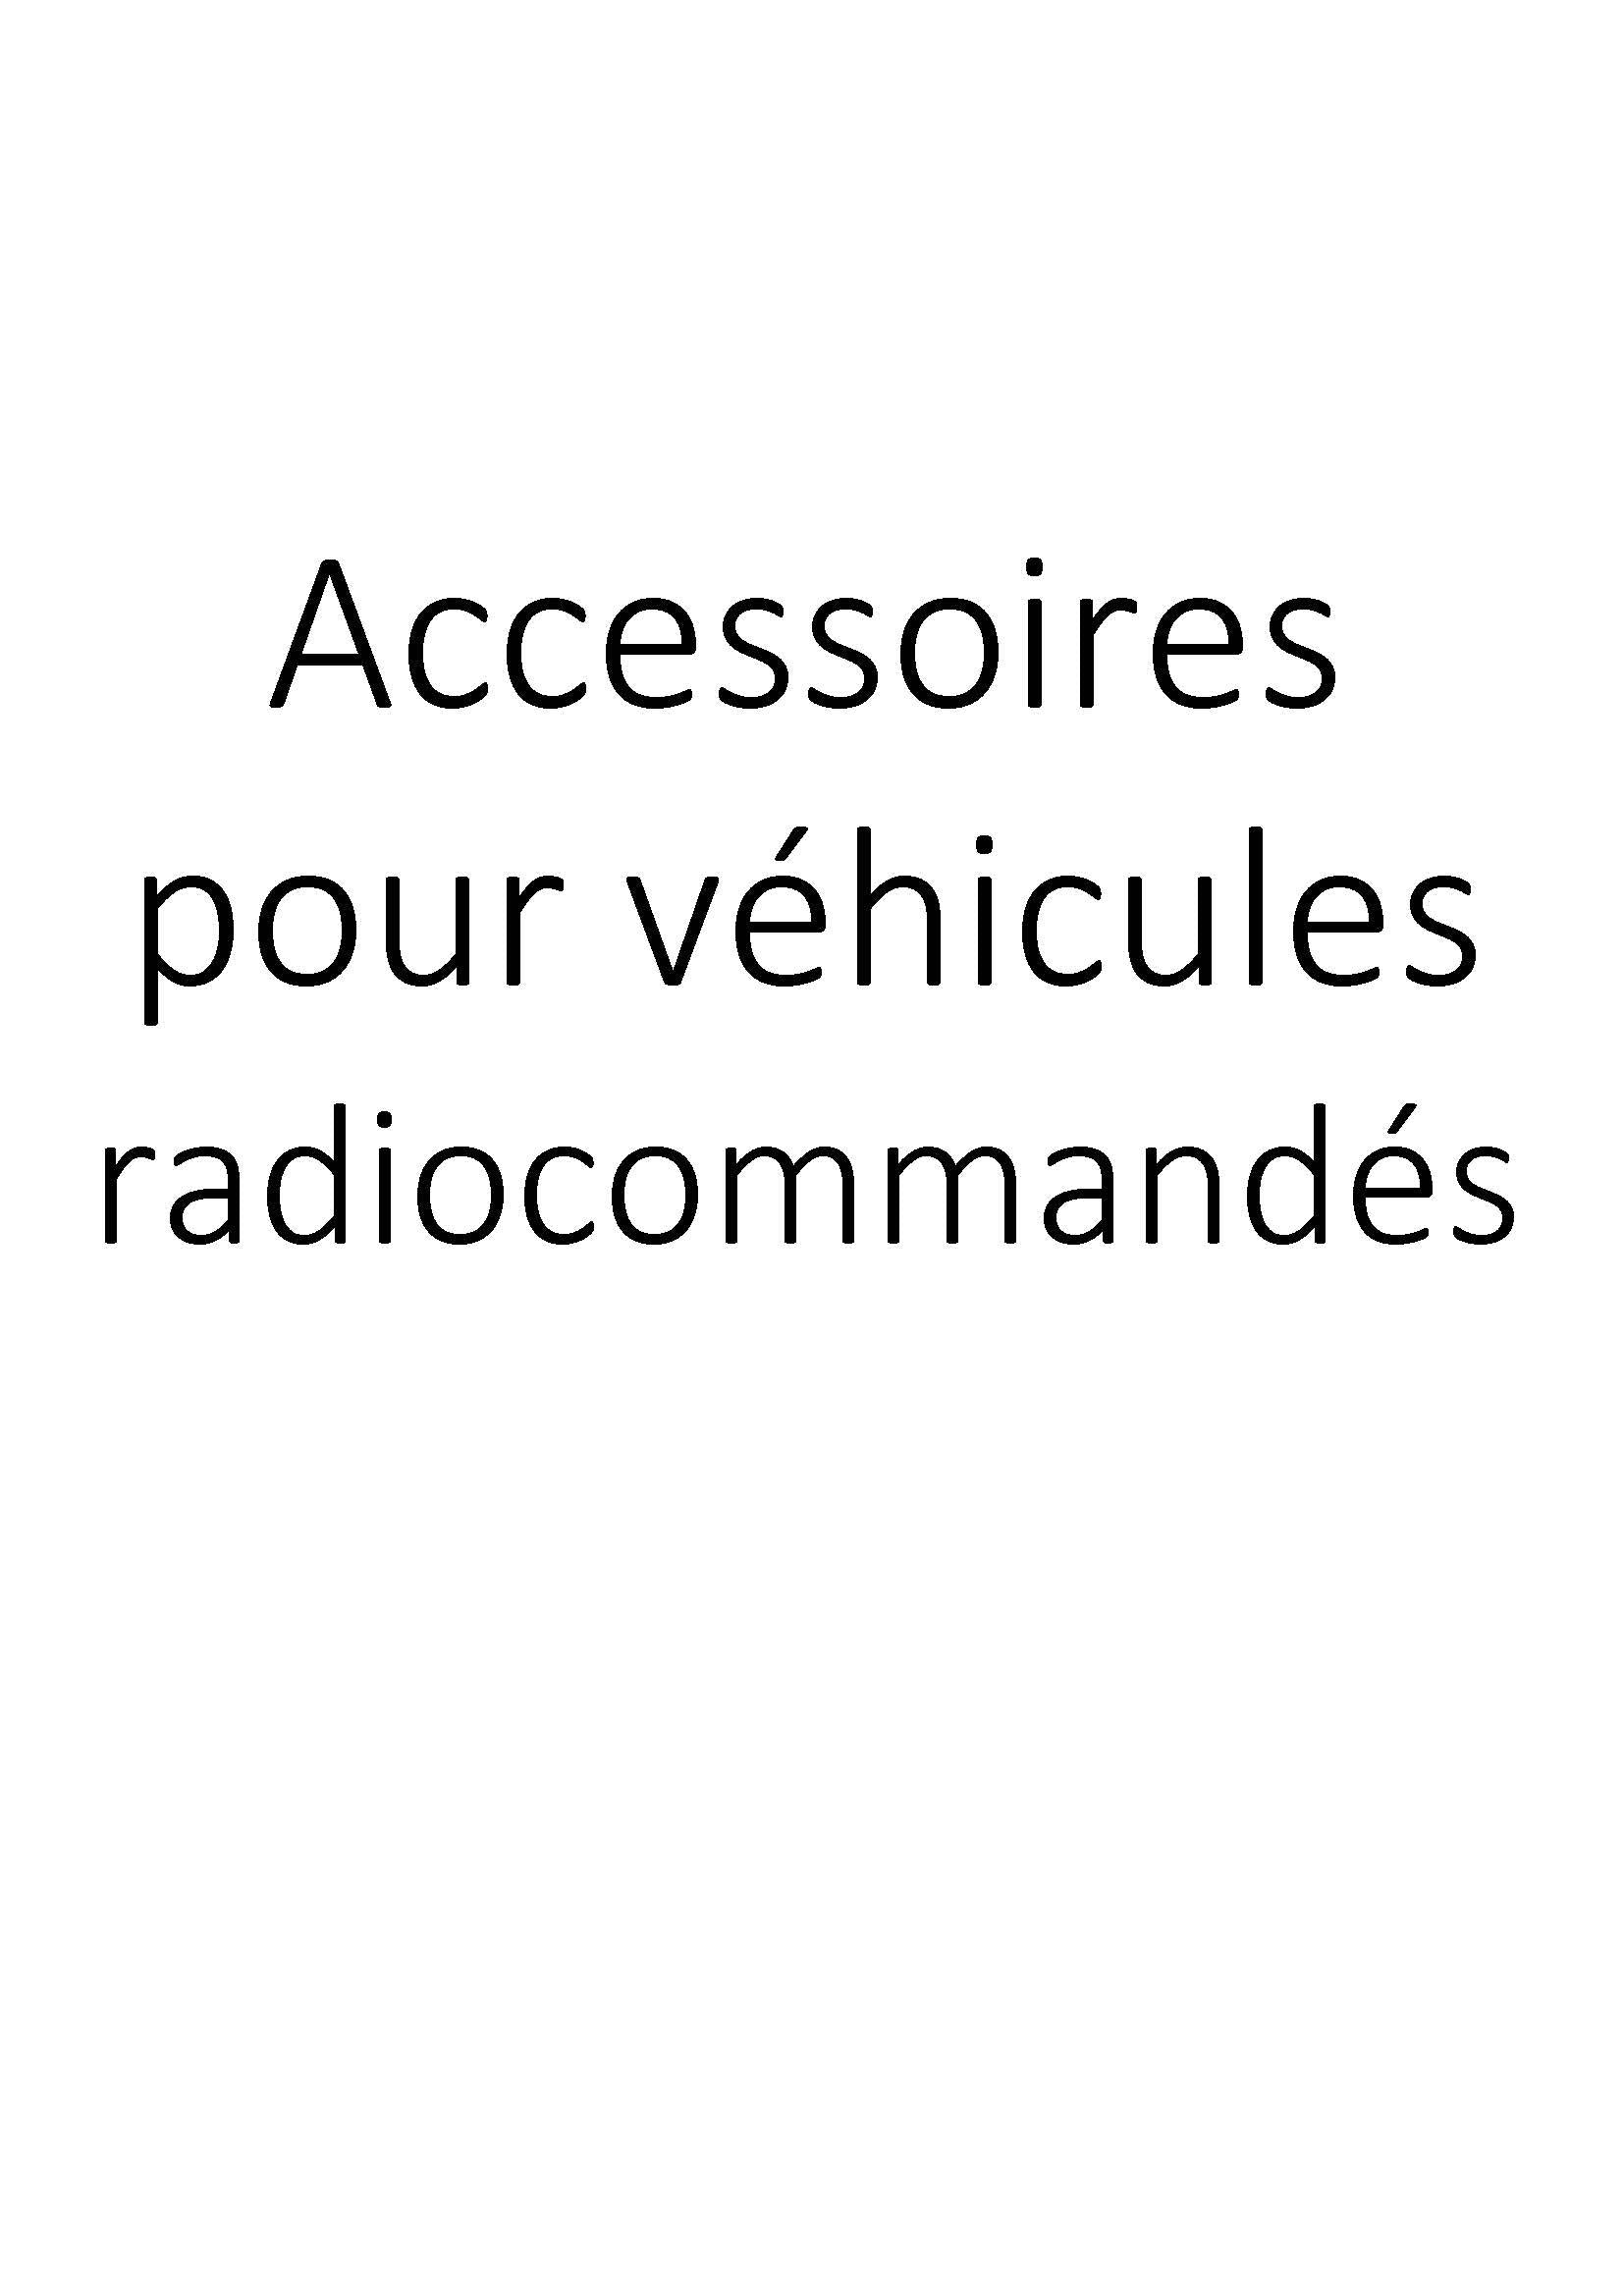 Accessoires pour véhicules radiocommandés clicktofournisseur.com